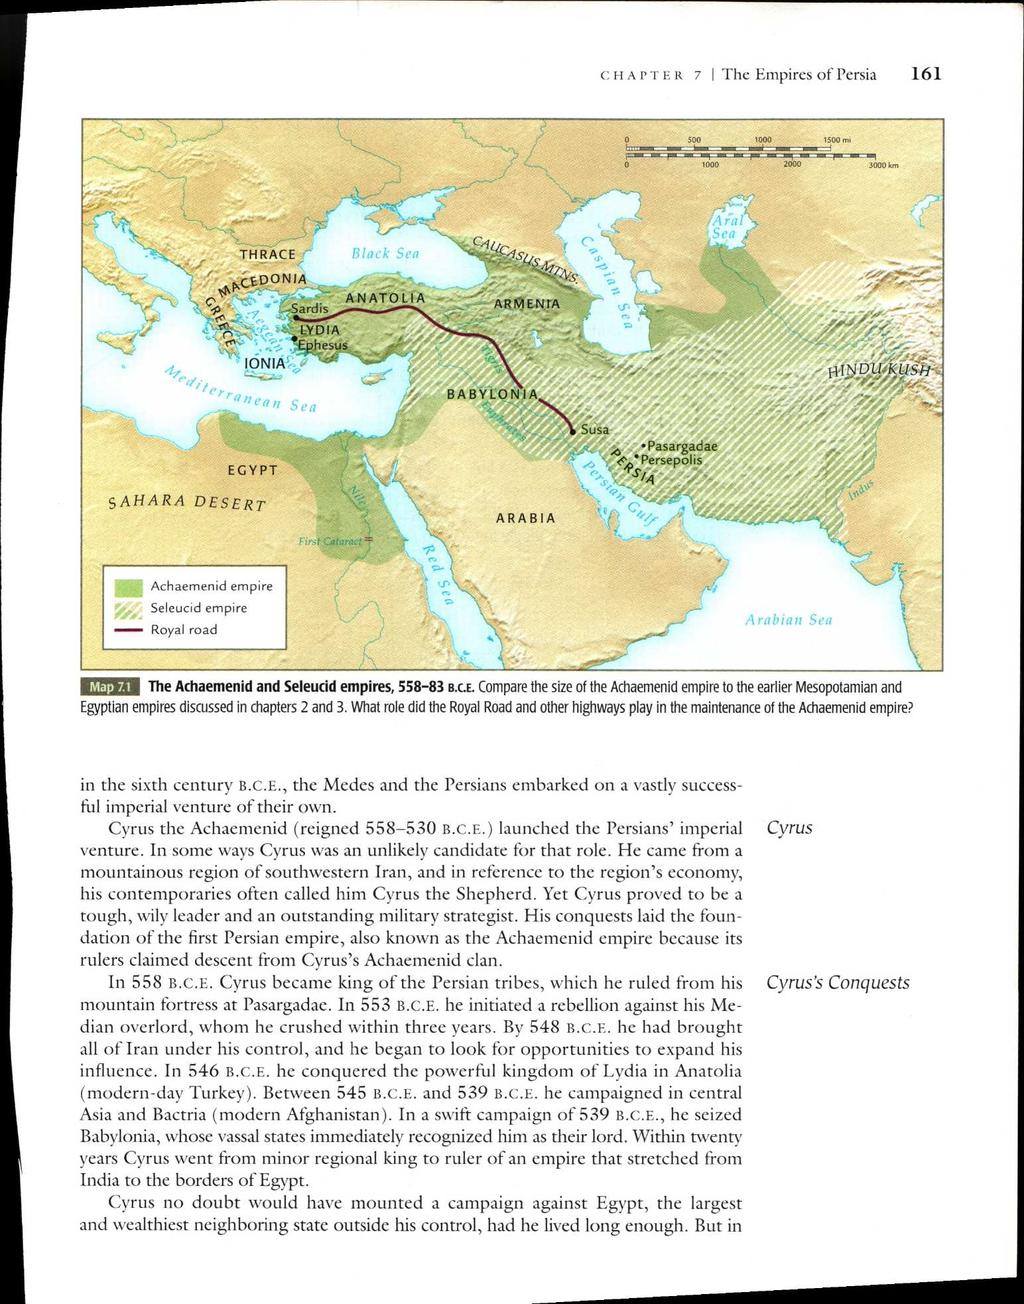 CHAPTER 7 I The Empires of Persia 161 soo woo 1100 mi 1000 2000 3000 km EGYPT SAHARA DESERT THRACE...foscDONIA a / I O NIA y, Sardis LYDIA *Ephesus a ANATOLIA C40 C IS(/Sh;.